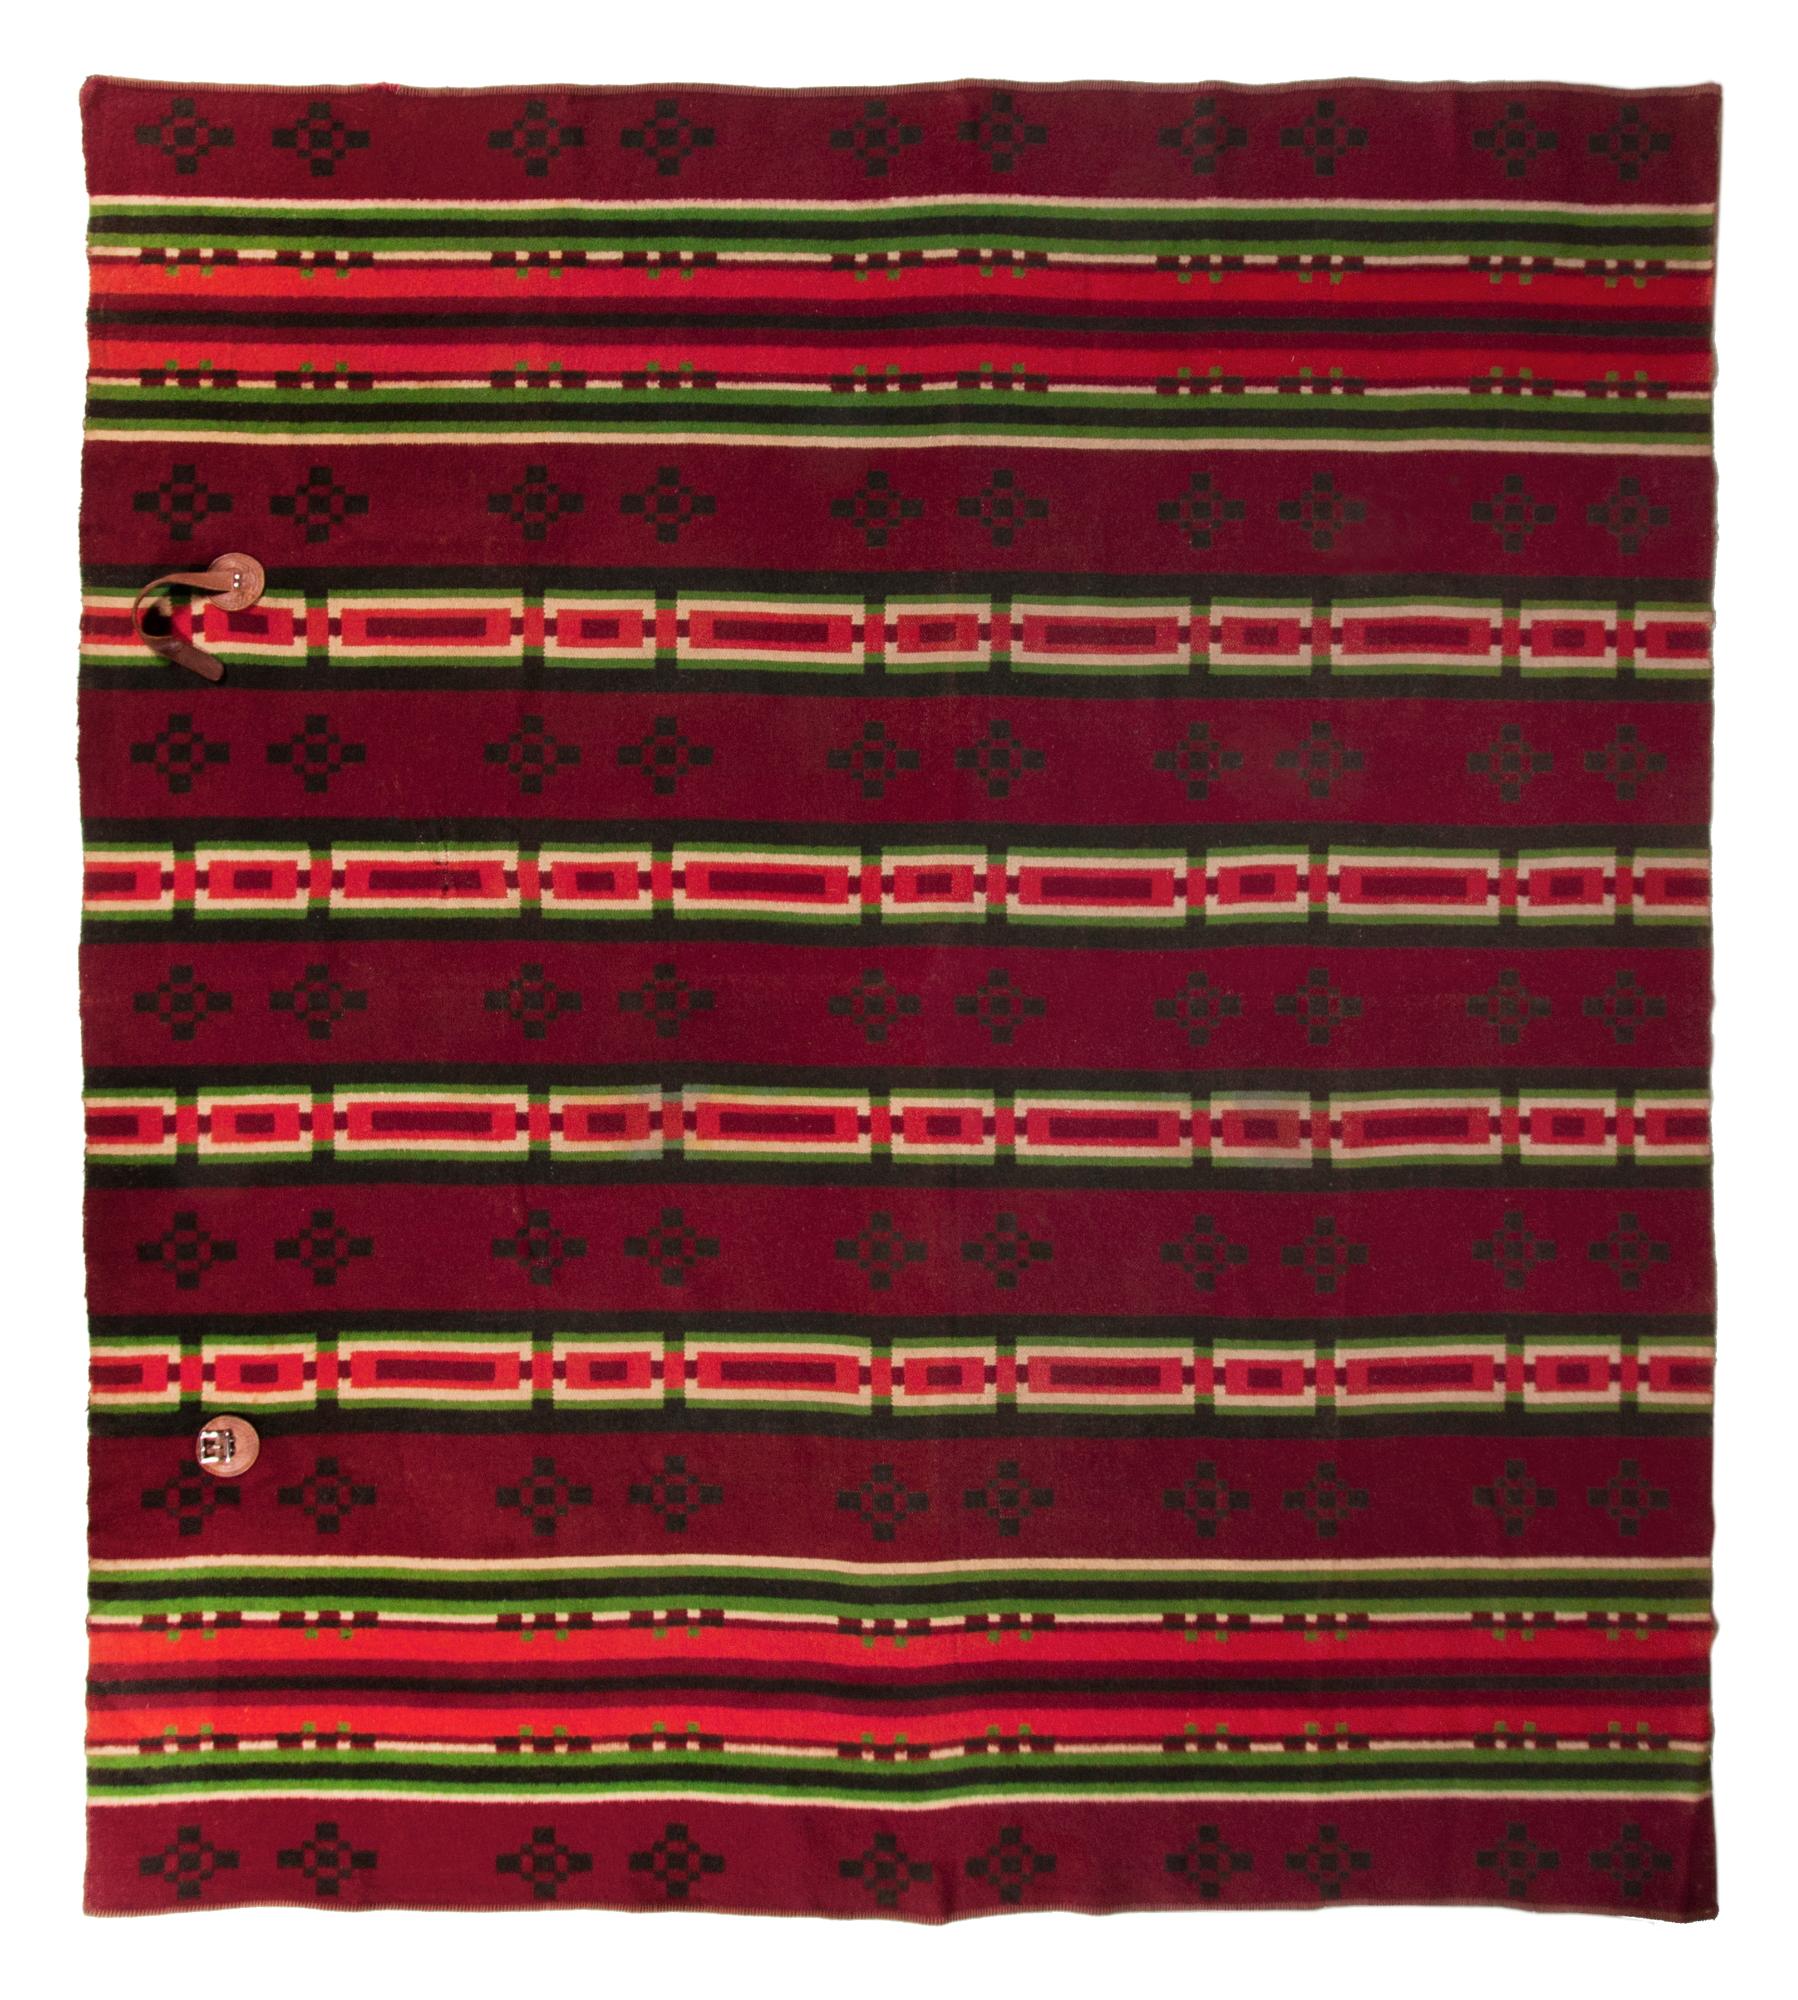 Auf dem Webstuhl gewebte Pferdedecke, hergestellt um 1890-1910. Das gestreifte und geometrische Muster besteht aus lindgrün, sonnenrot und elfenbeinfarben vor einem winterlich/sommerlichen, reversiblen Grund in waldgrün und bordeauxrot. Die langen